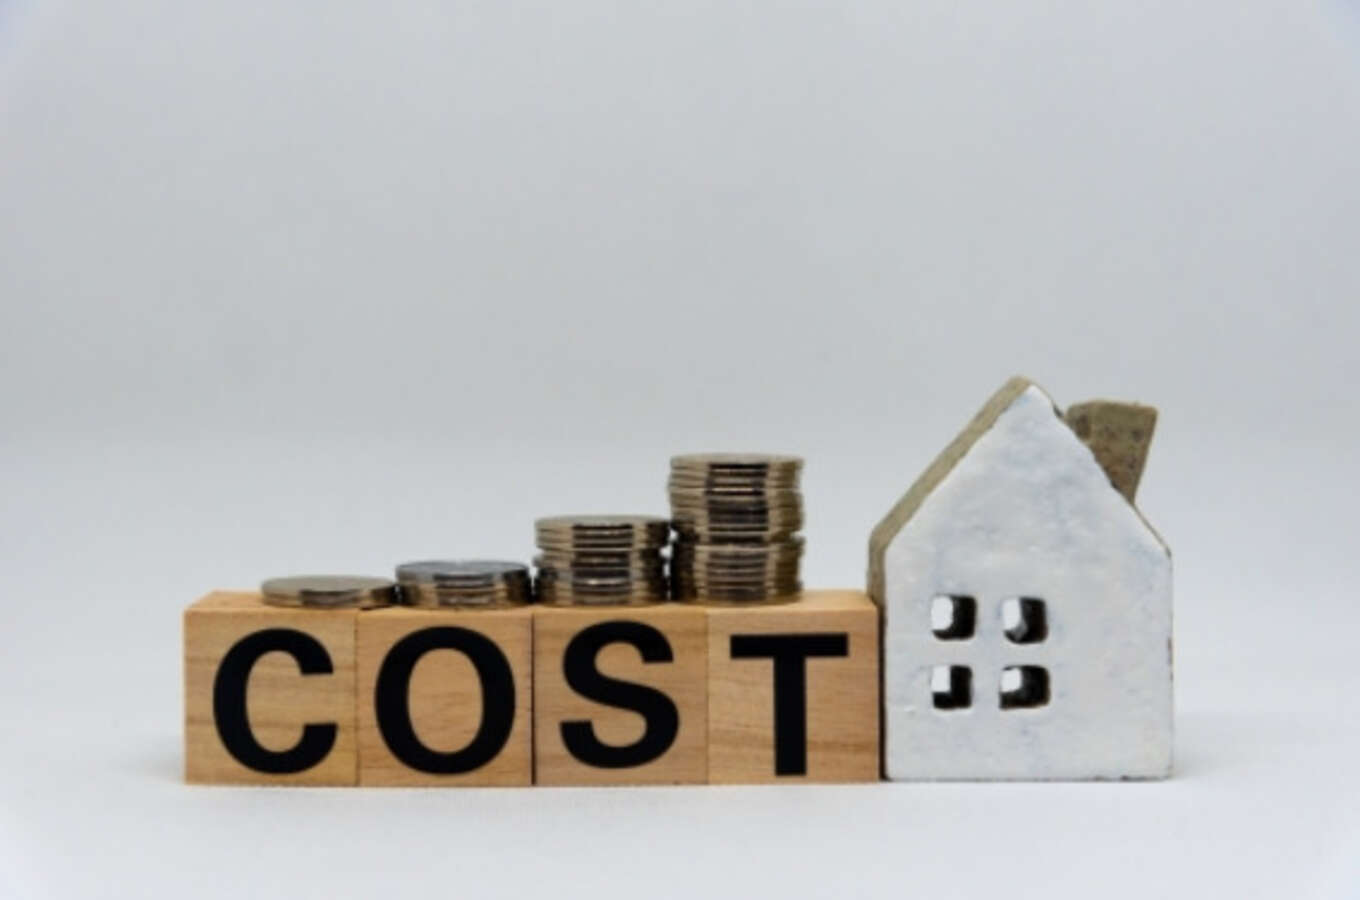 COSTの文字と家の模型